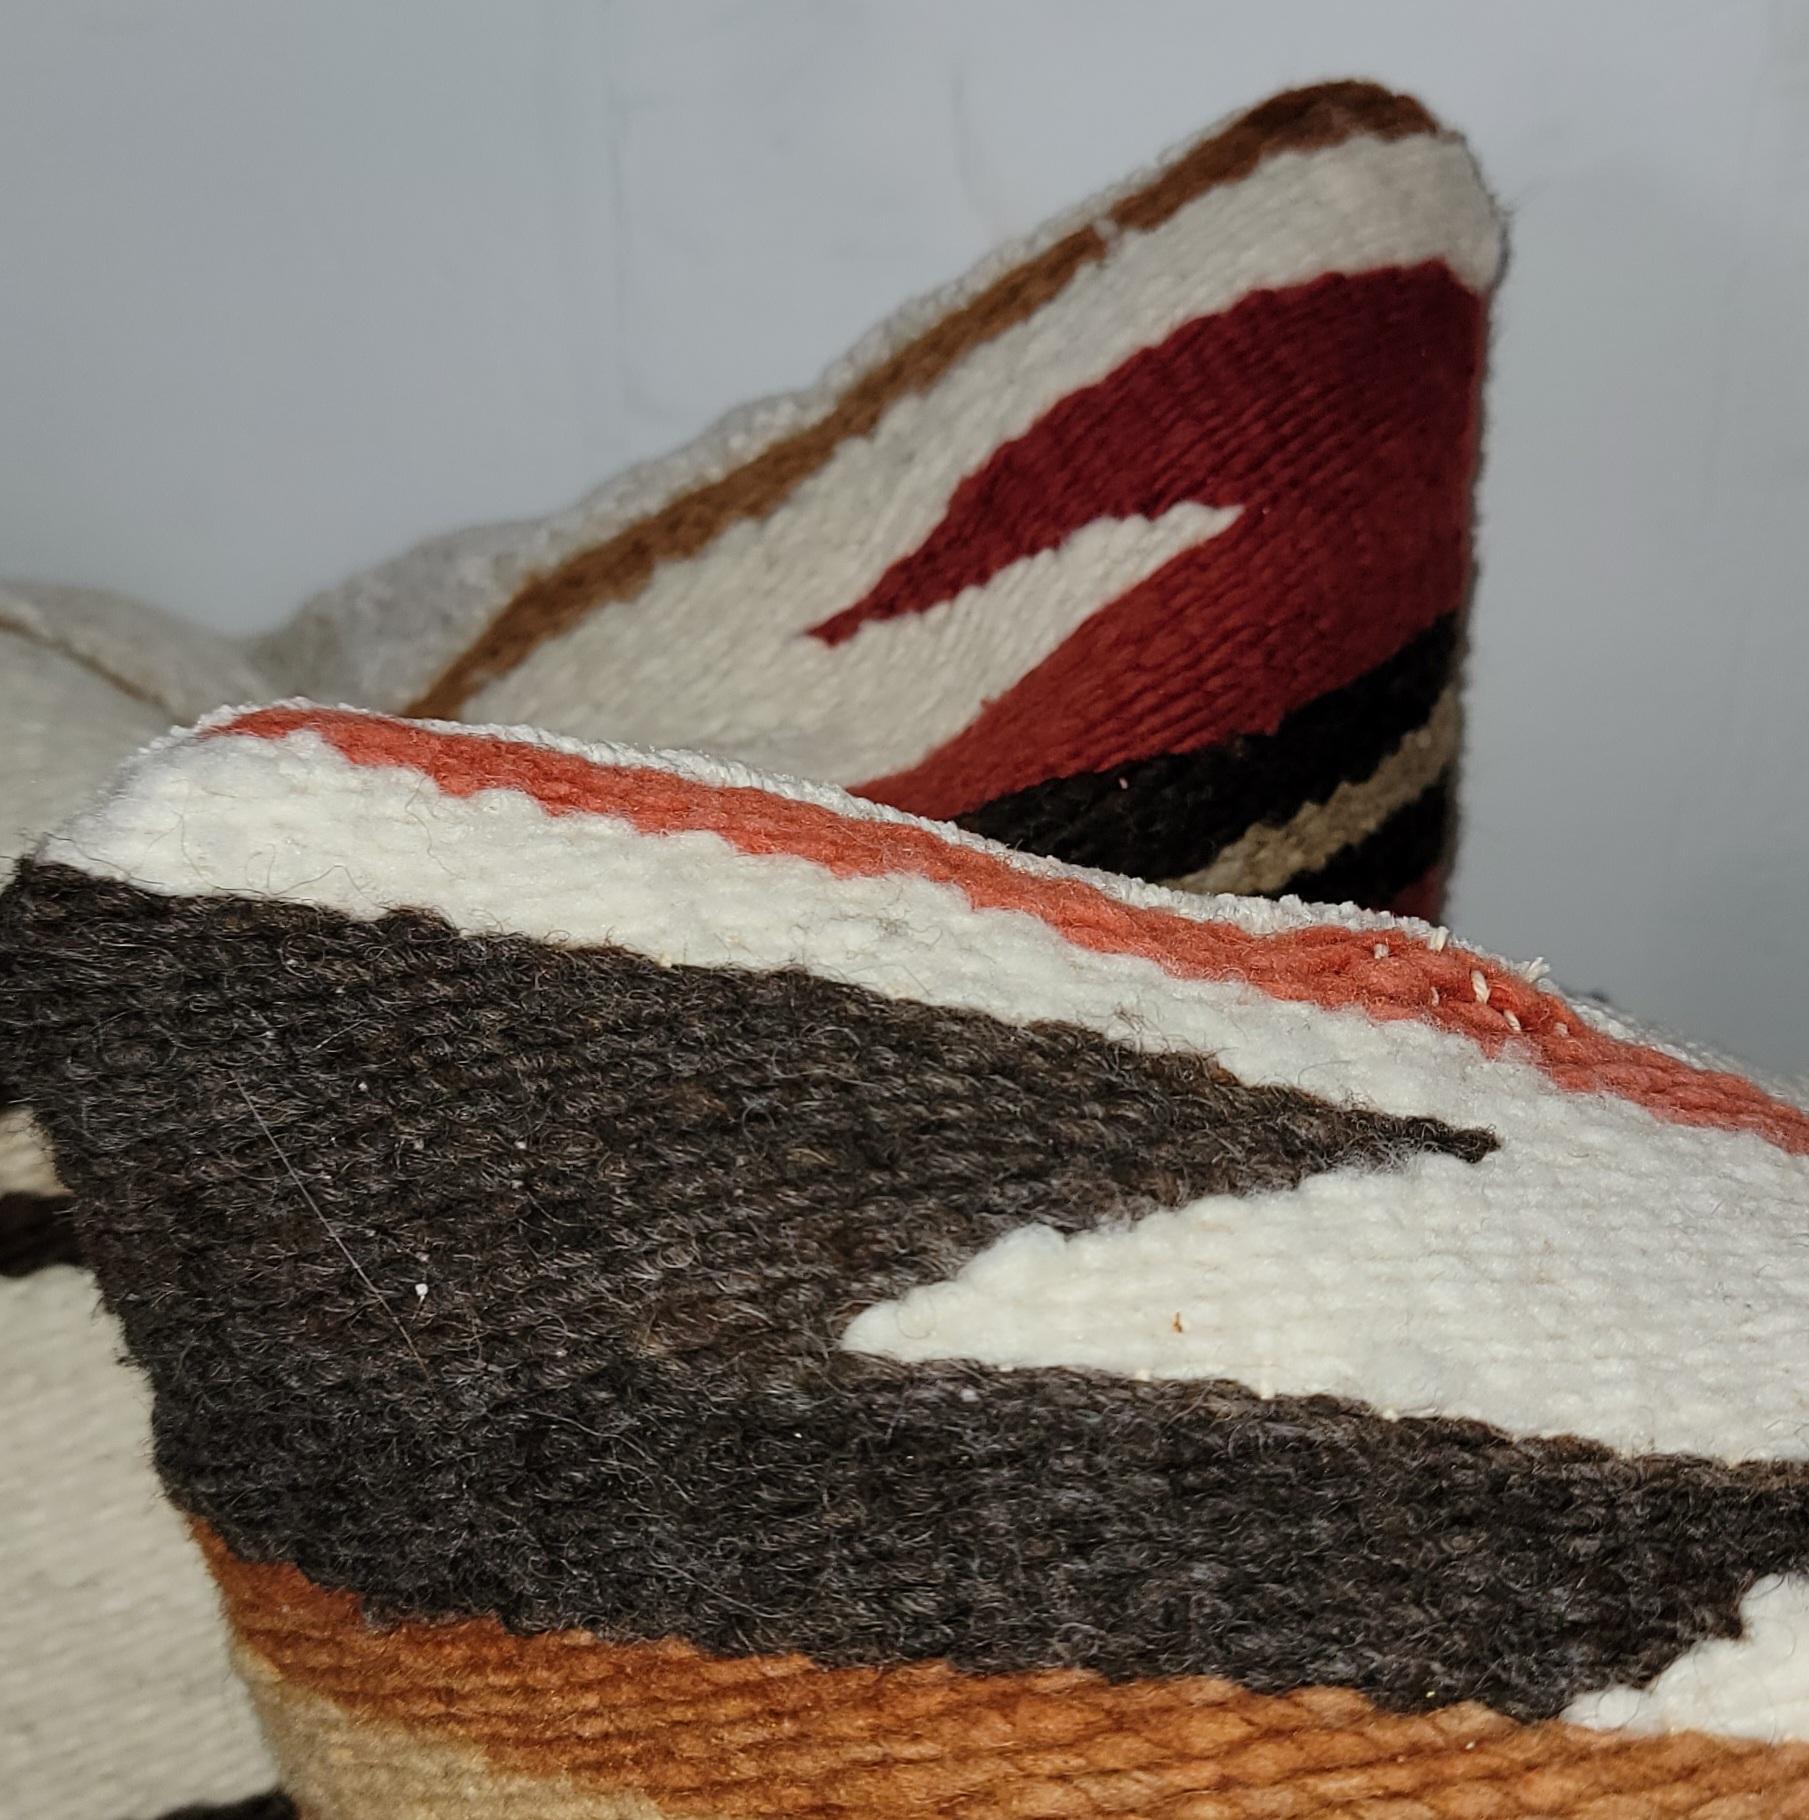 Coussins de tissage Navajo Indian eye dazzler - paire. Dos en chenille blanc cassé et cache-nez à fermeture éclair. Inserts en duvet et plumes.
Mesures : 18 x 17.